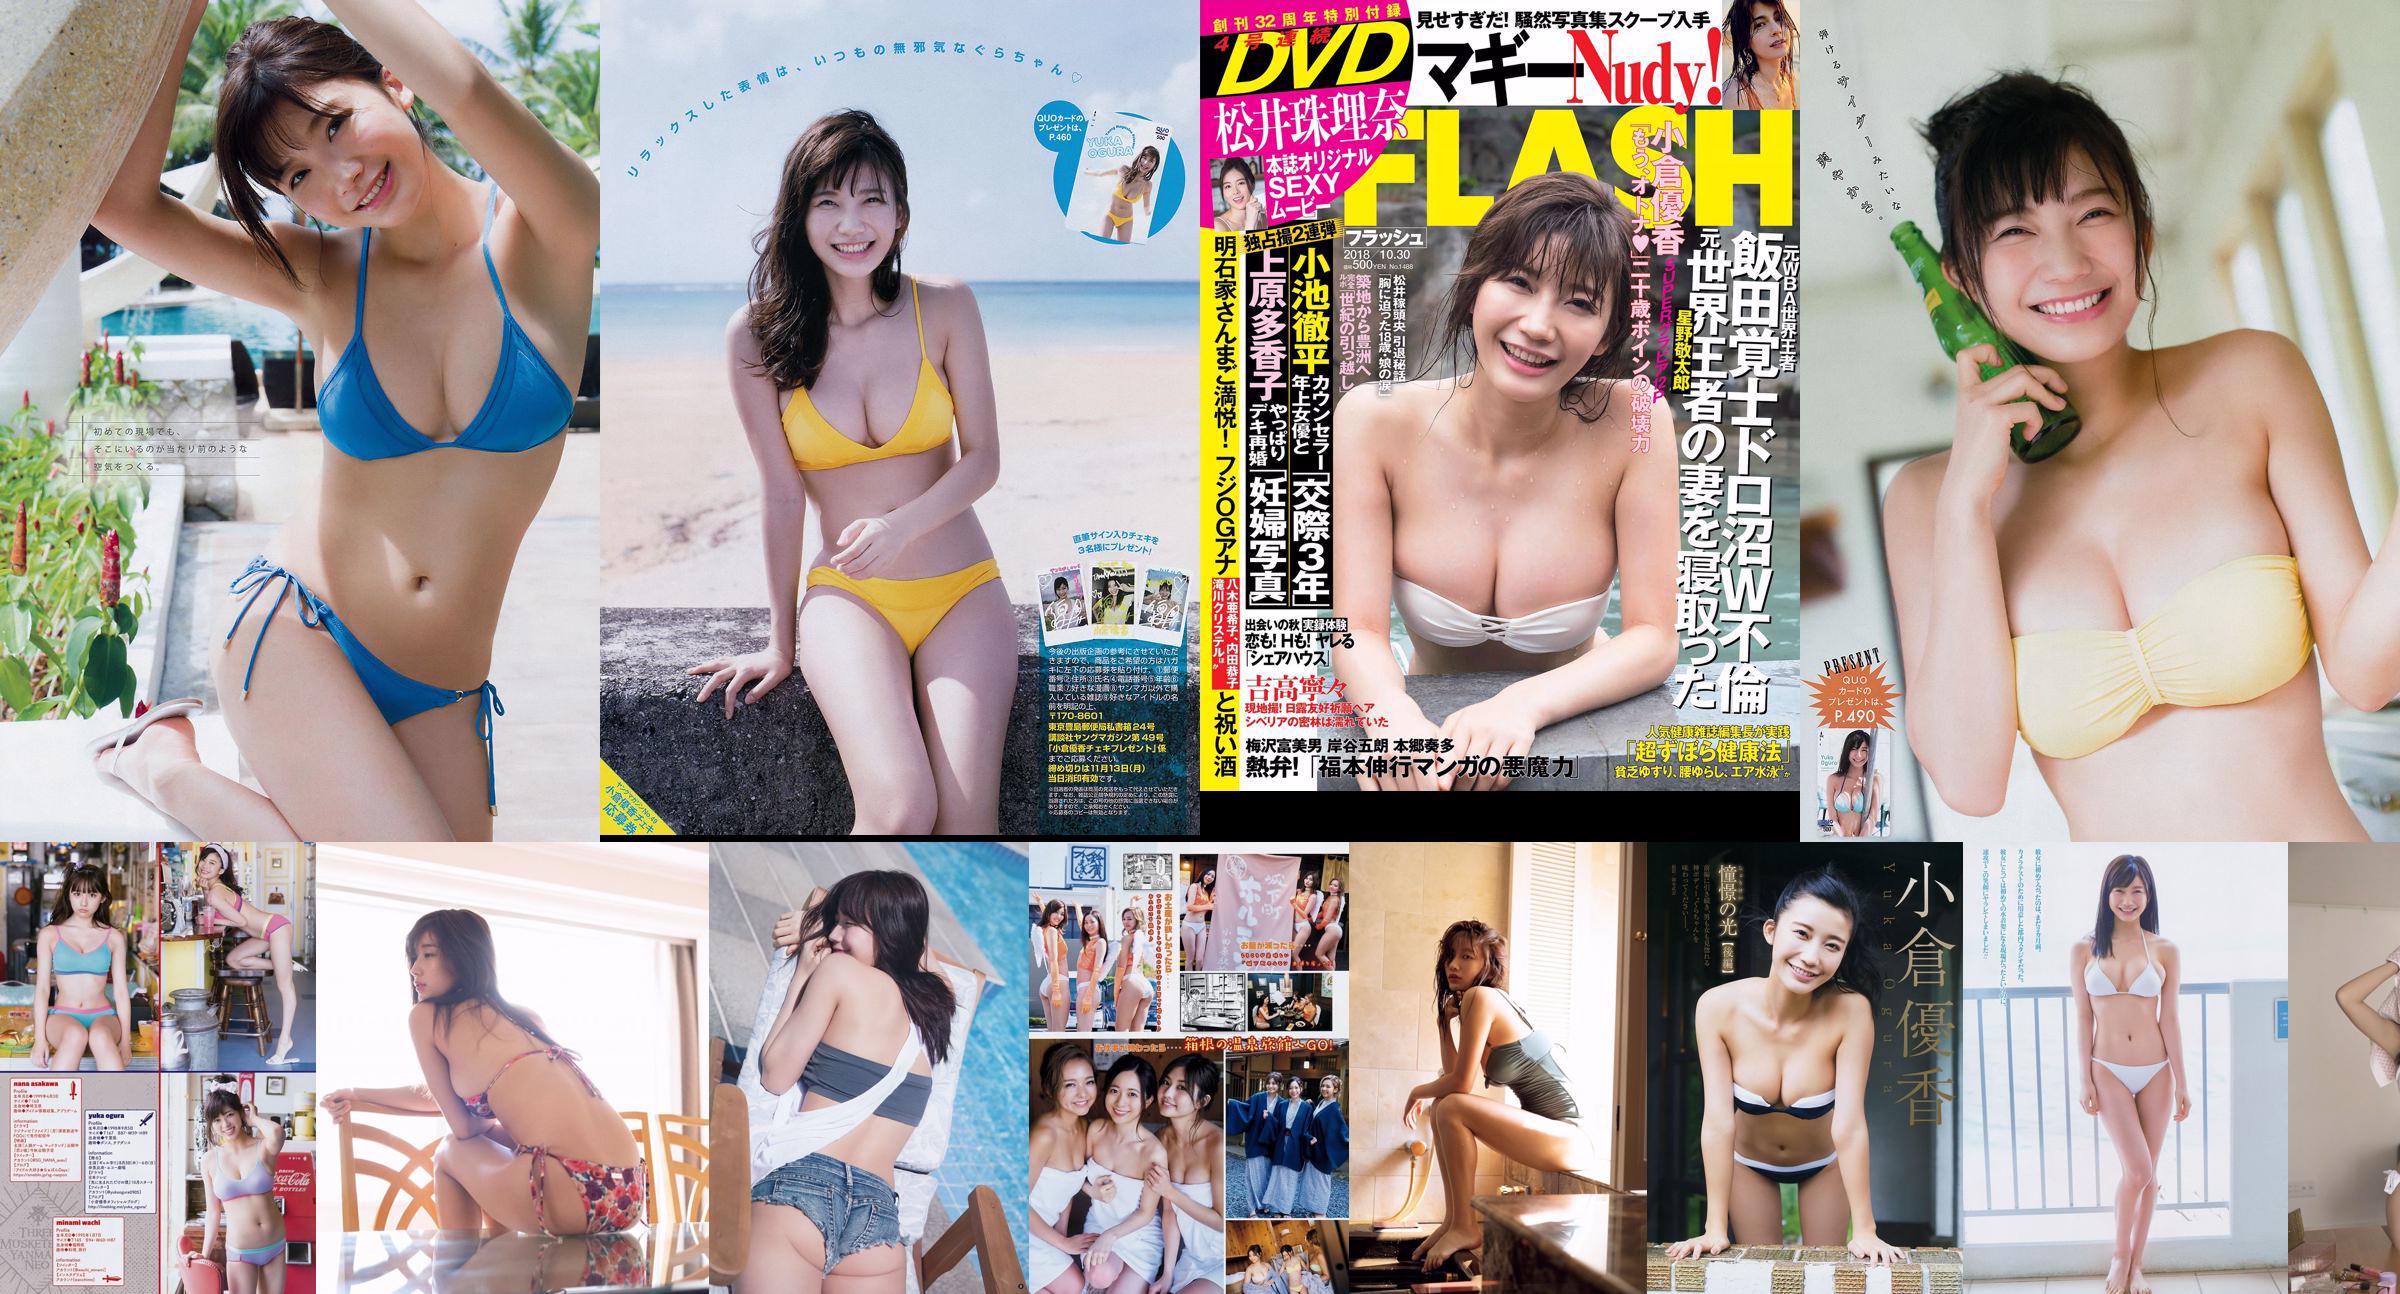 [Young Magazine] Yuka Ogura Sayaka Mitori 2018 No.42 Photograph No.63da2b Page 1